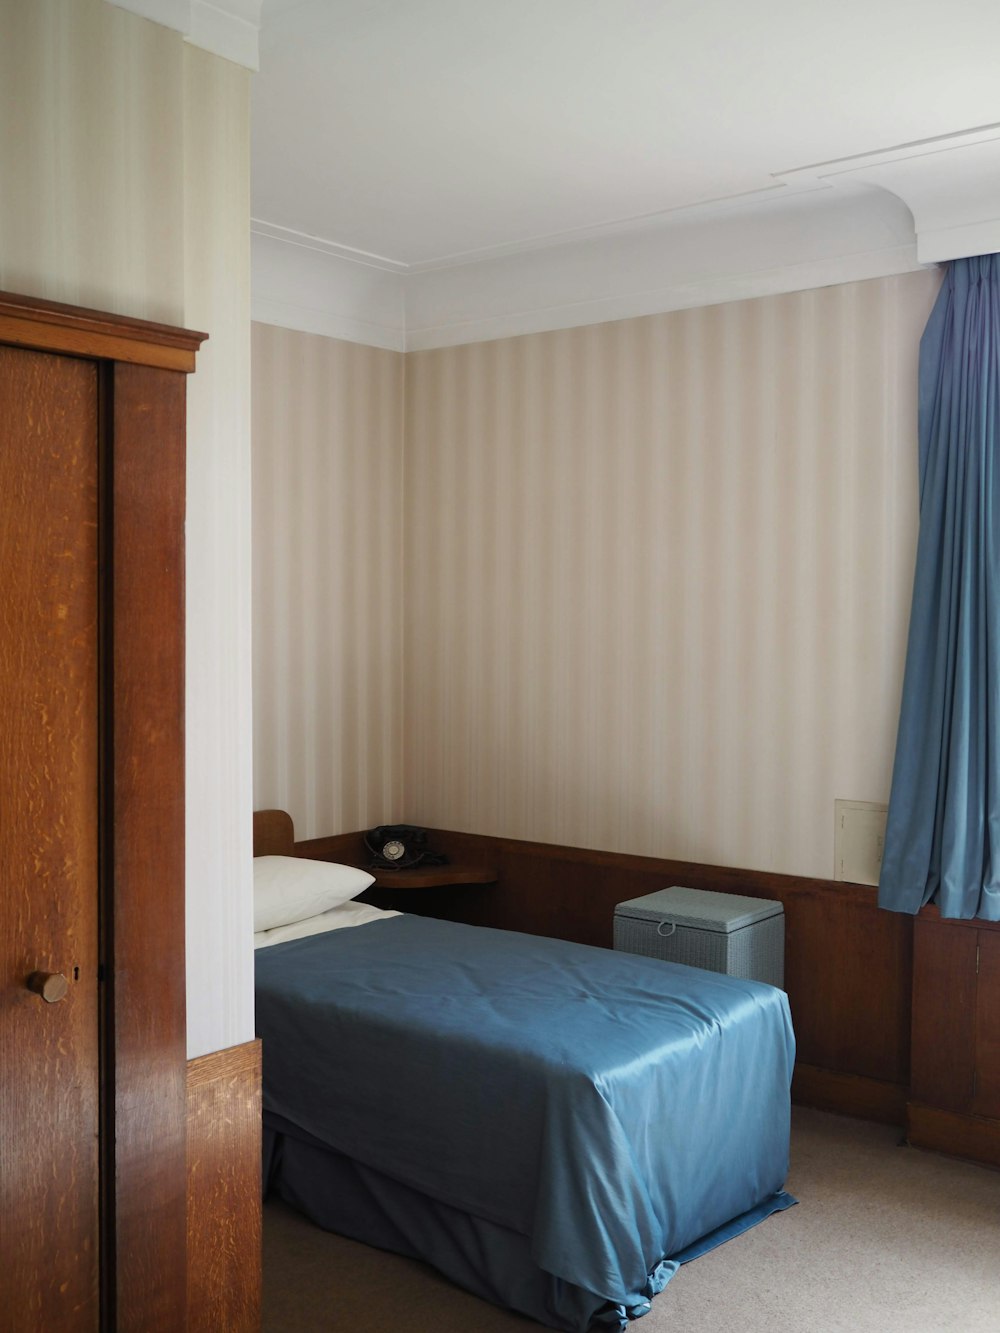 blue bed linen near brown wooden door